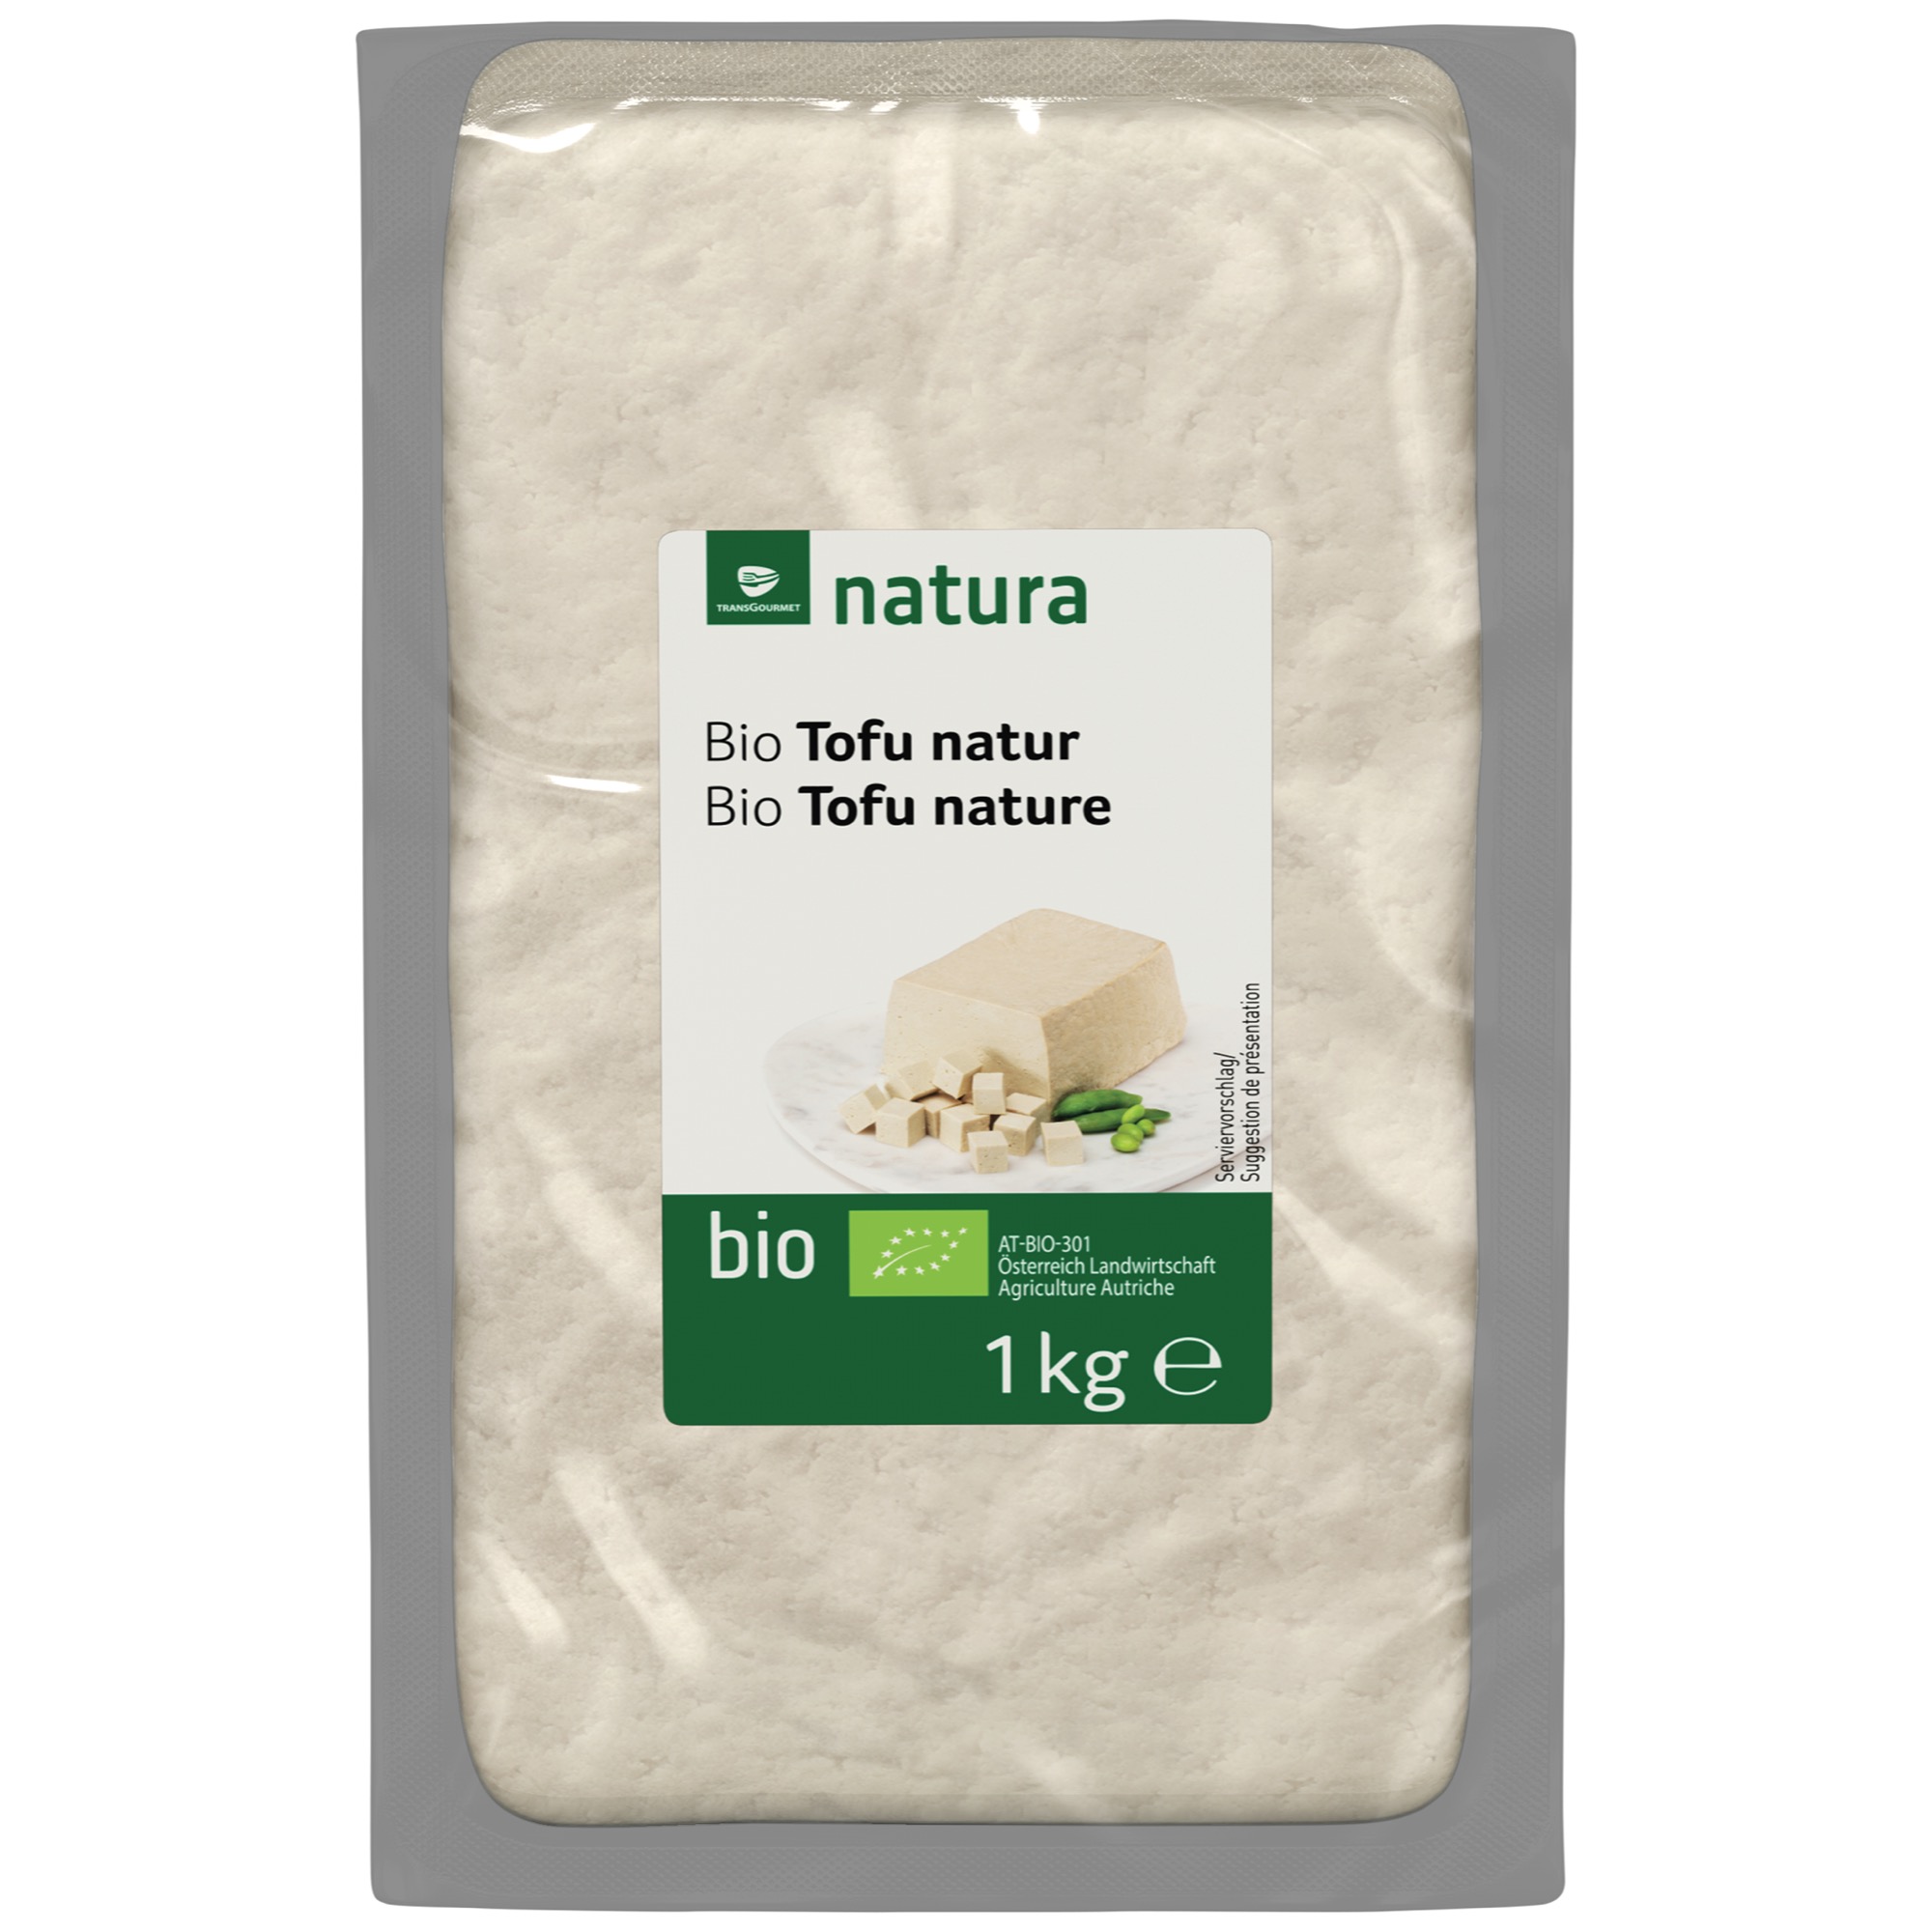 Natura Bio Tofu Natur 1kg